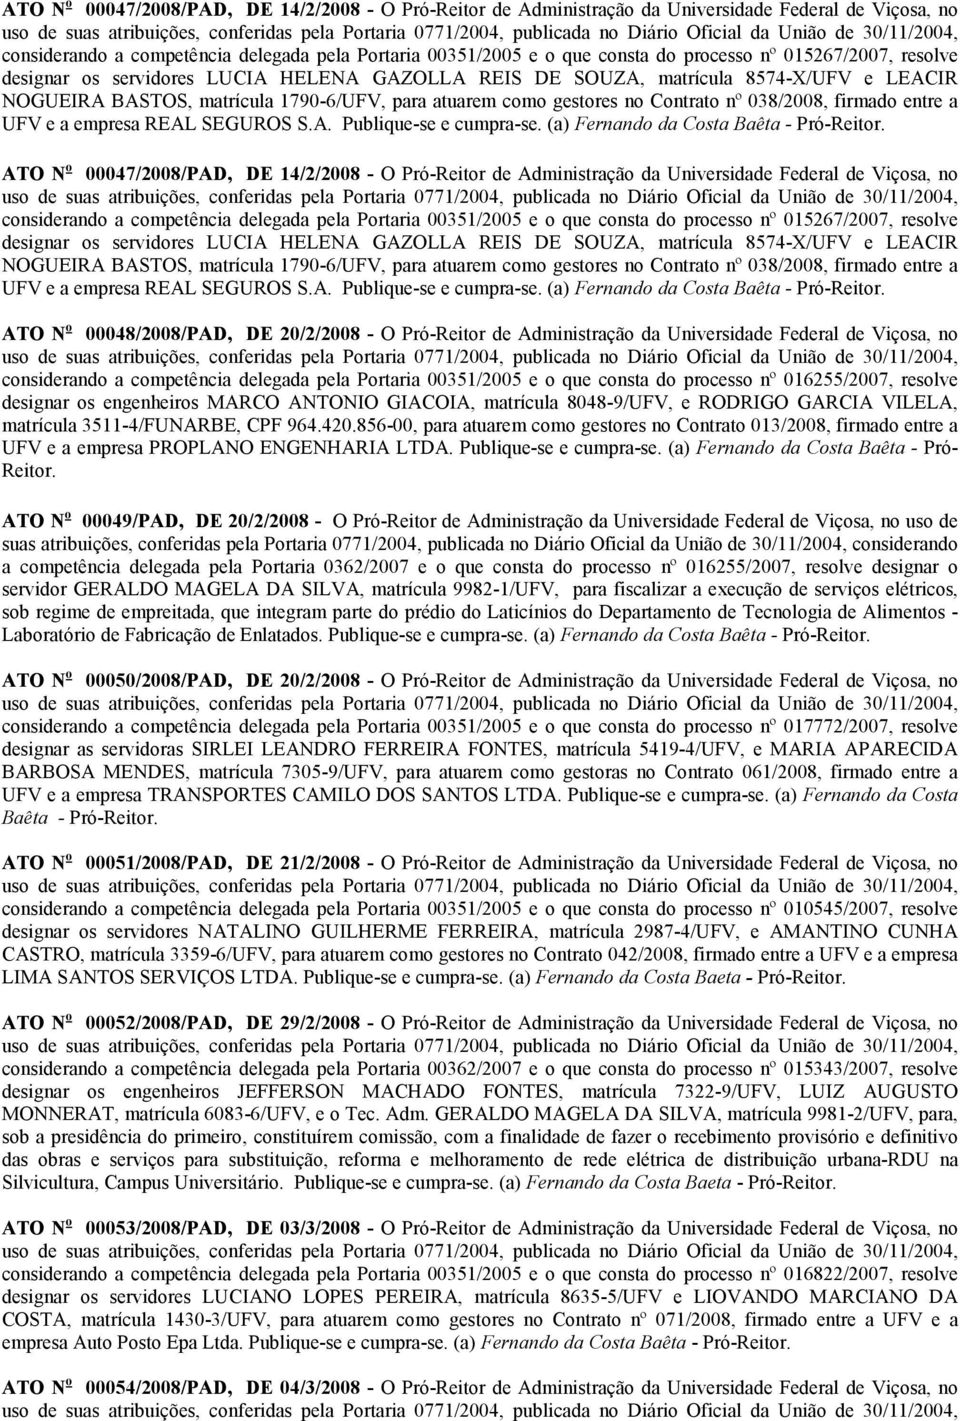 038/2008, firmado entre a UFV e a empresa REAL SEGUROS S.A. Publique-se e cumpra-se. (a) Fernando da Costa Baêta - Pró-Reitor.